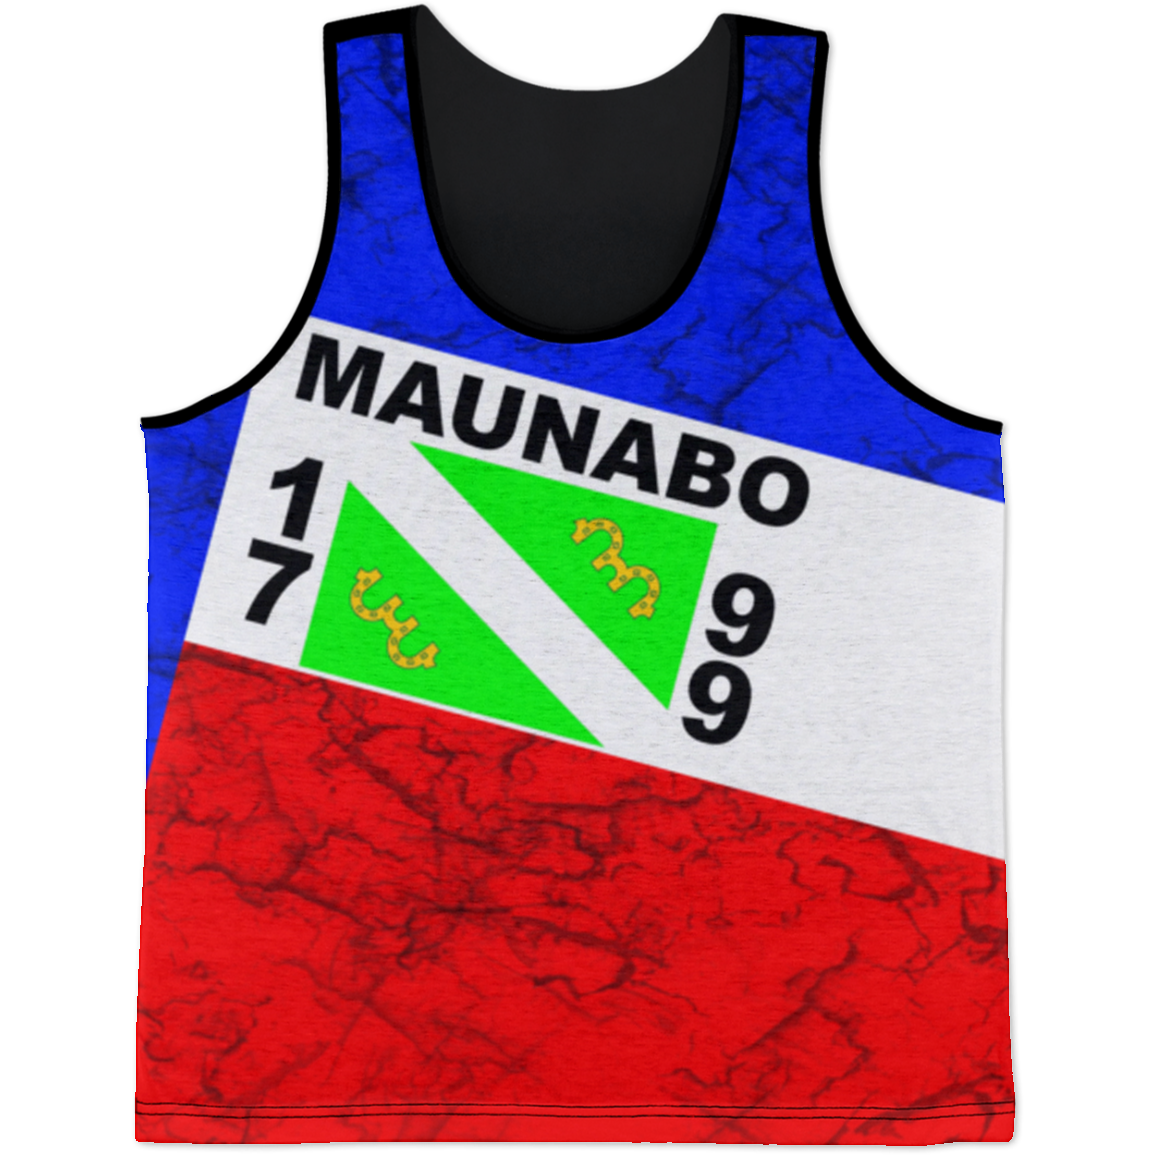 Maunabo Tank Top - Puerto Rican Pride